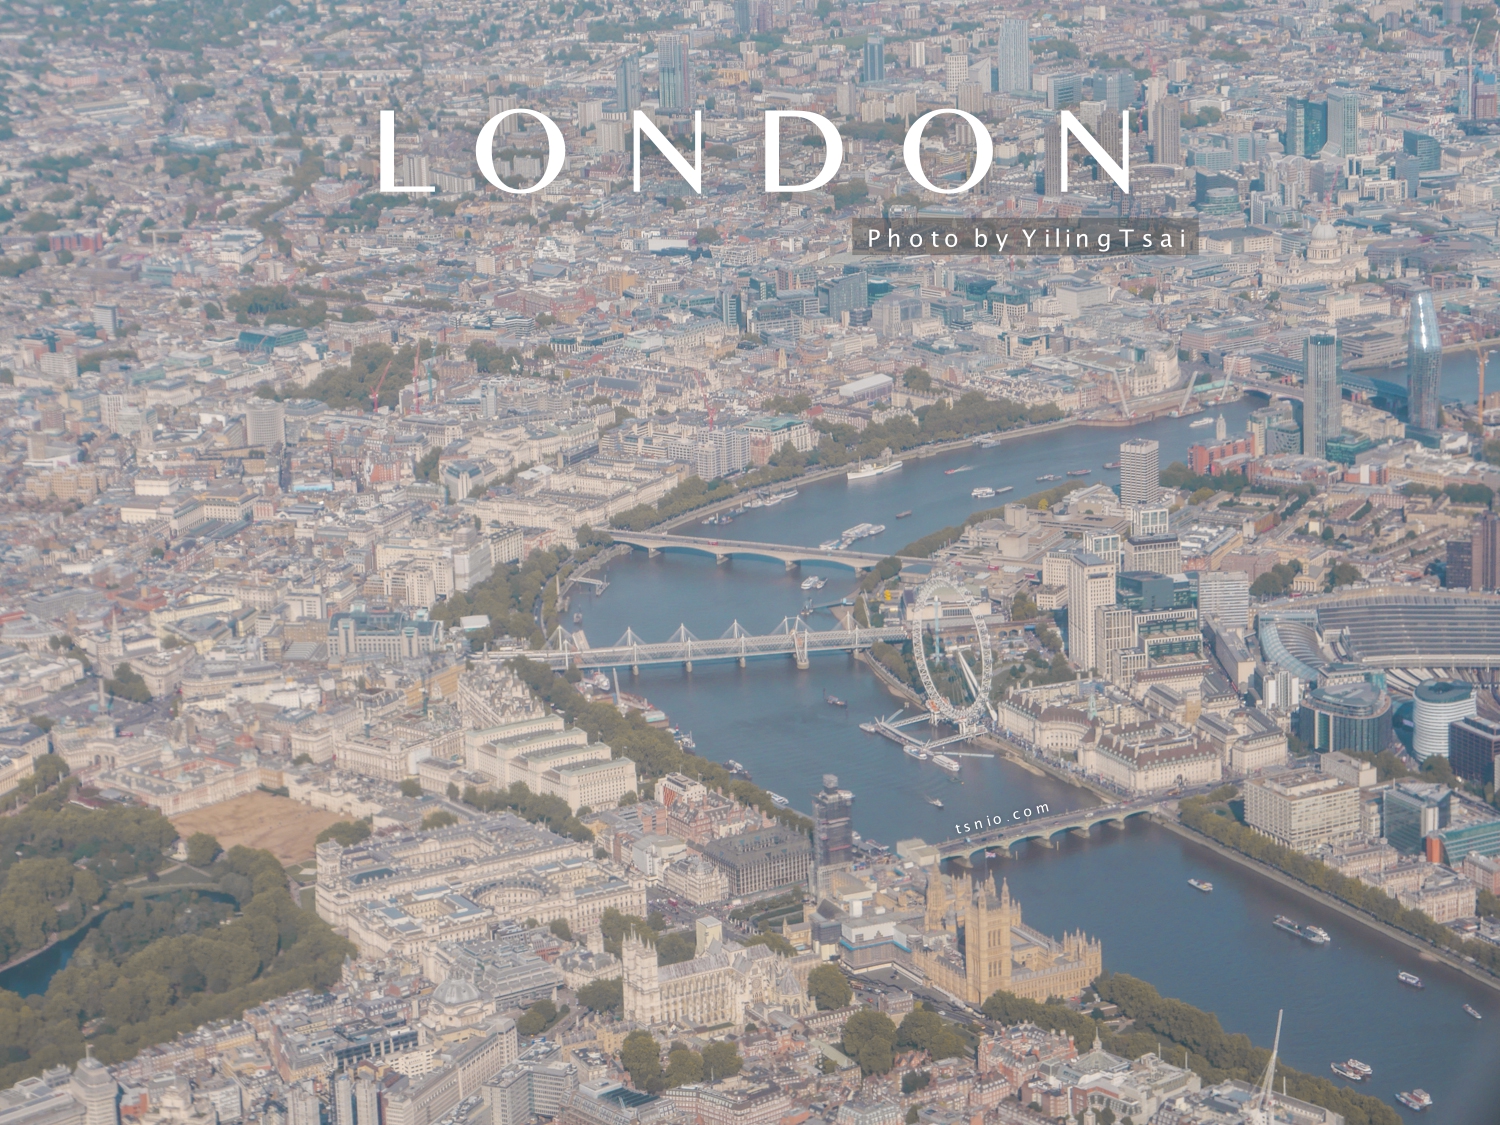 London Pass倫敦通行證攻略：免費參觀80多個倫敦景點，倫敦自由行省錢祕技